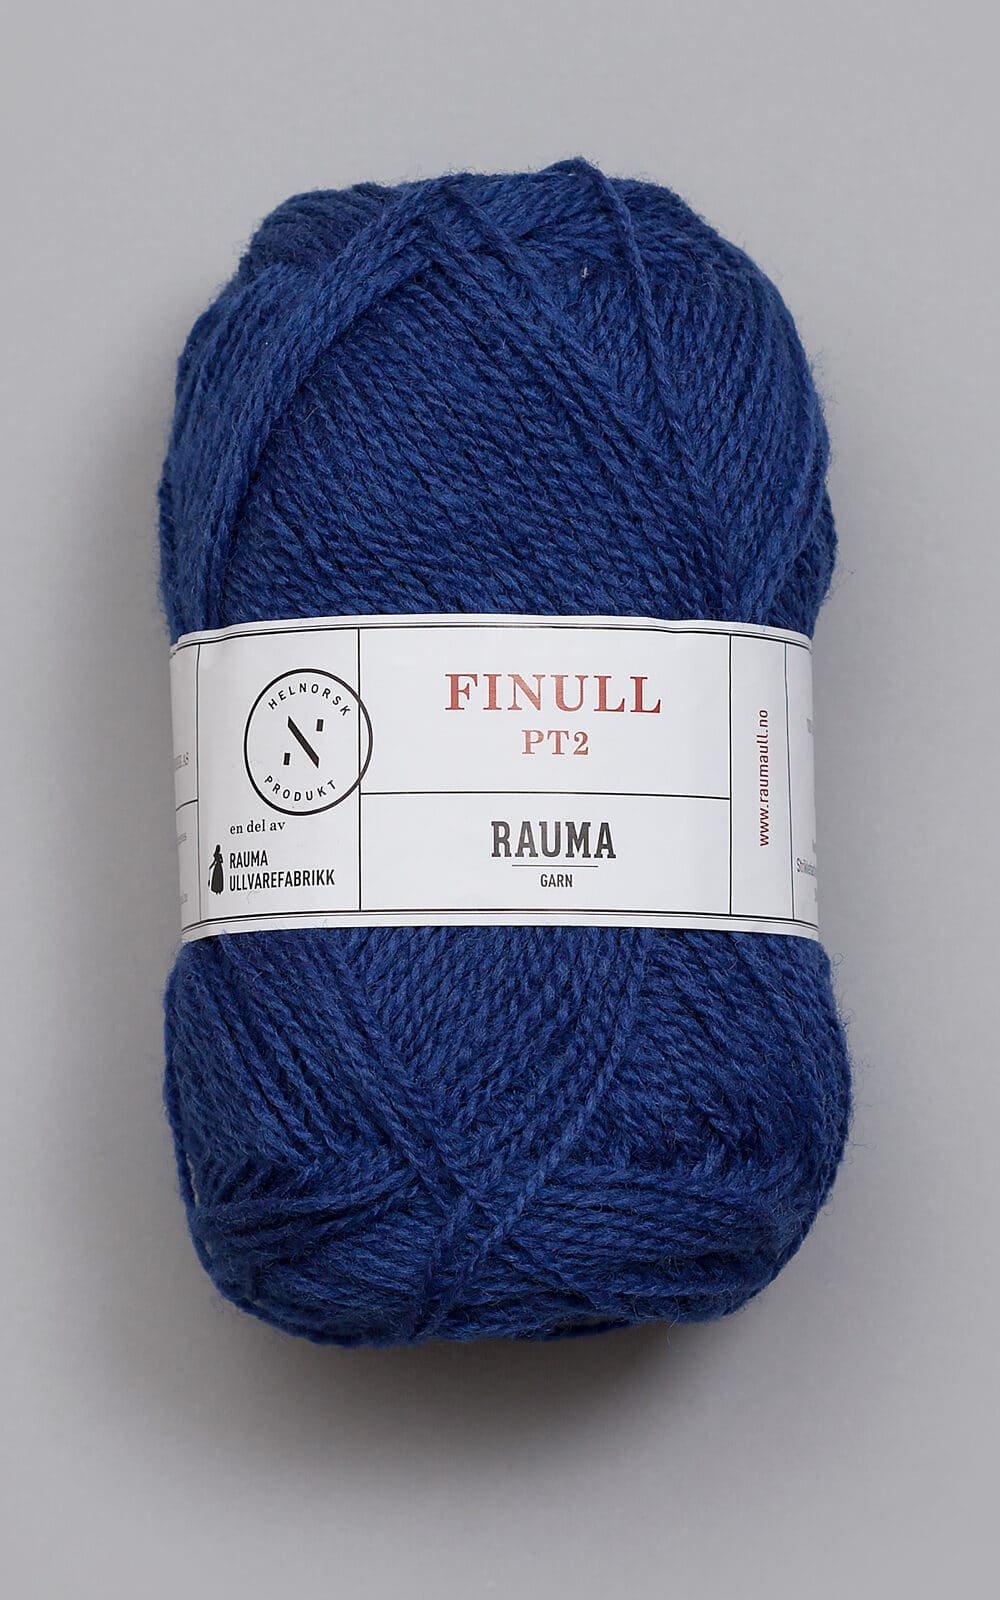 Billede af Finull - 443 Mørk jeansblå 443 Mørk jeansblå - variation - - Nordisk Garn